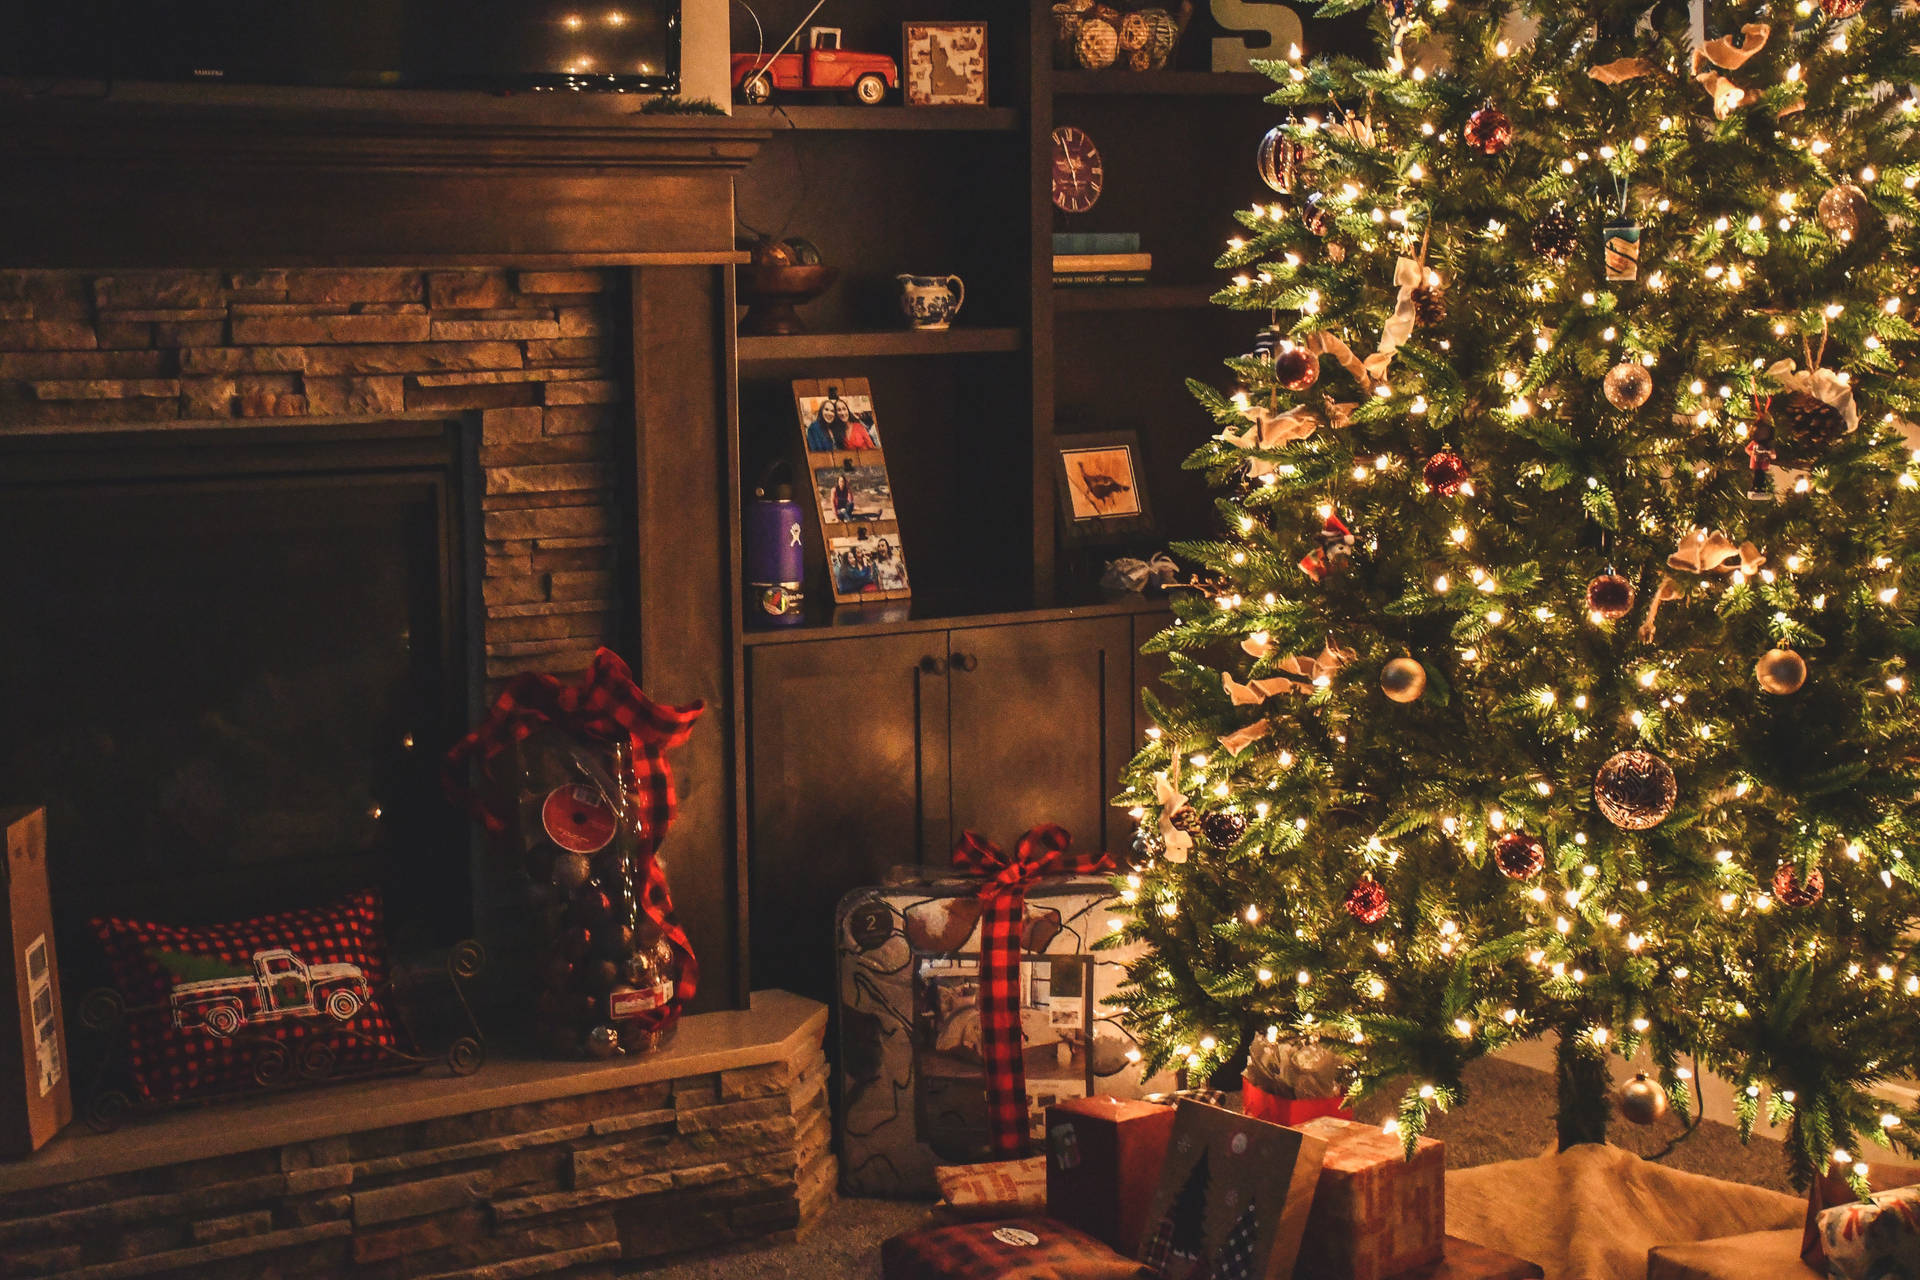 High-resolution Image Of A Traditional Christmas Setup